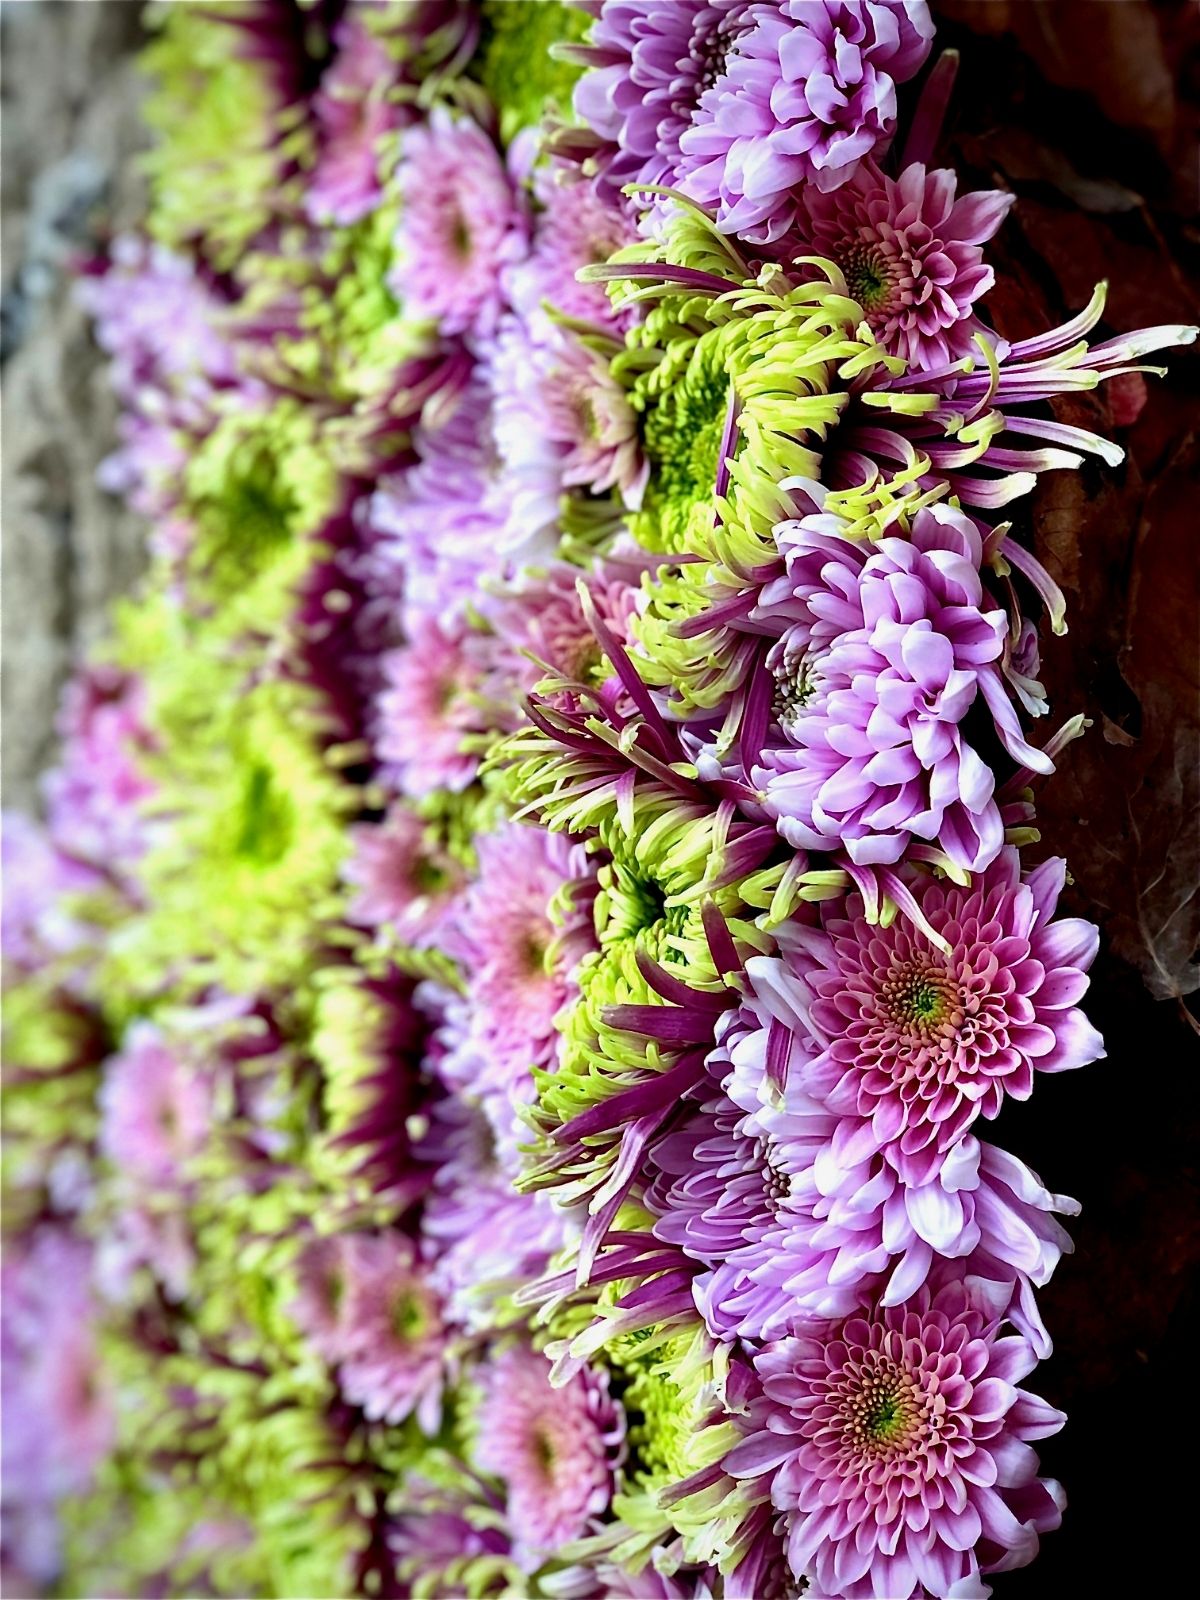 Design Japanese Garden 2 Haiku in bloom by Christa Ory -  flowers Just Chrys  - Blog on Thursd